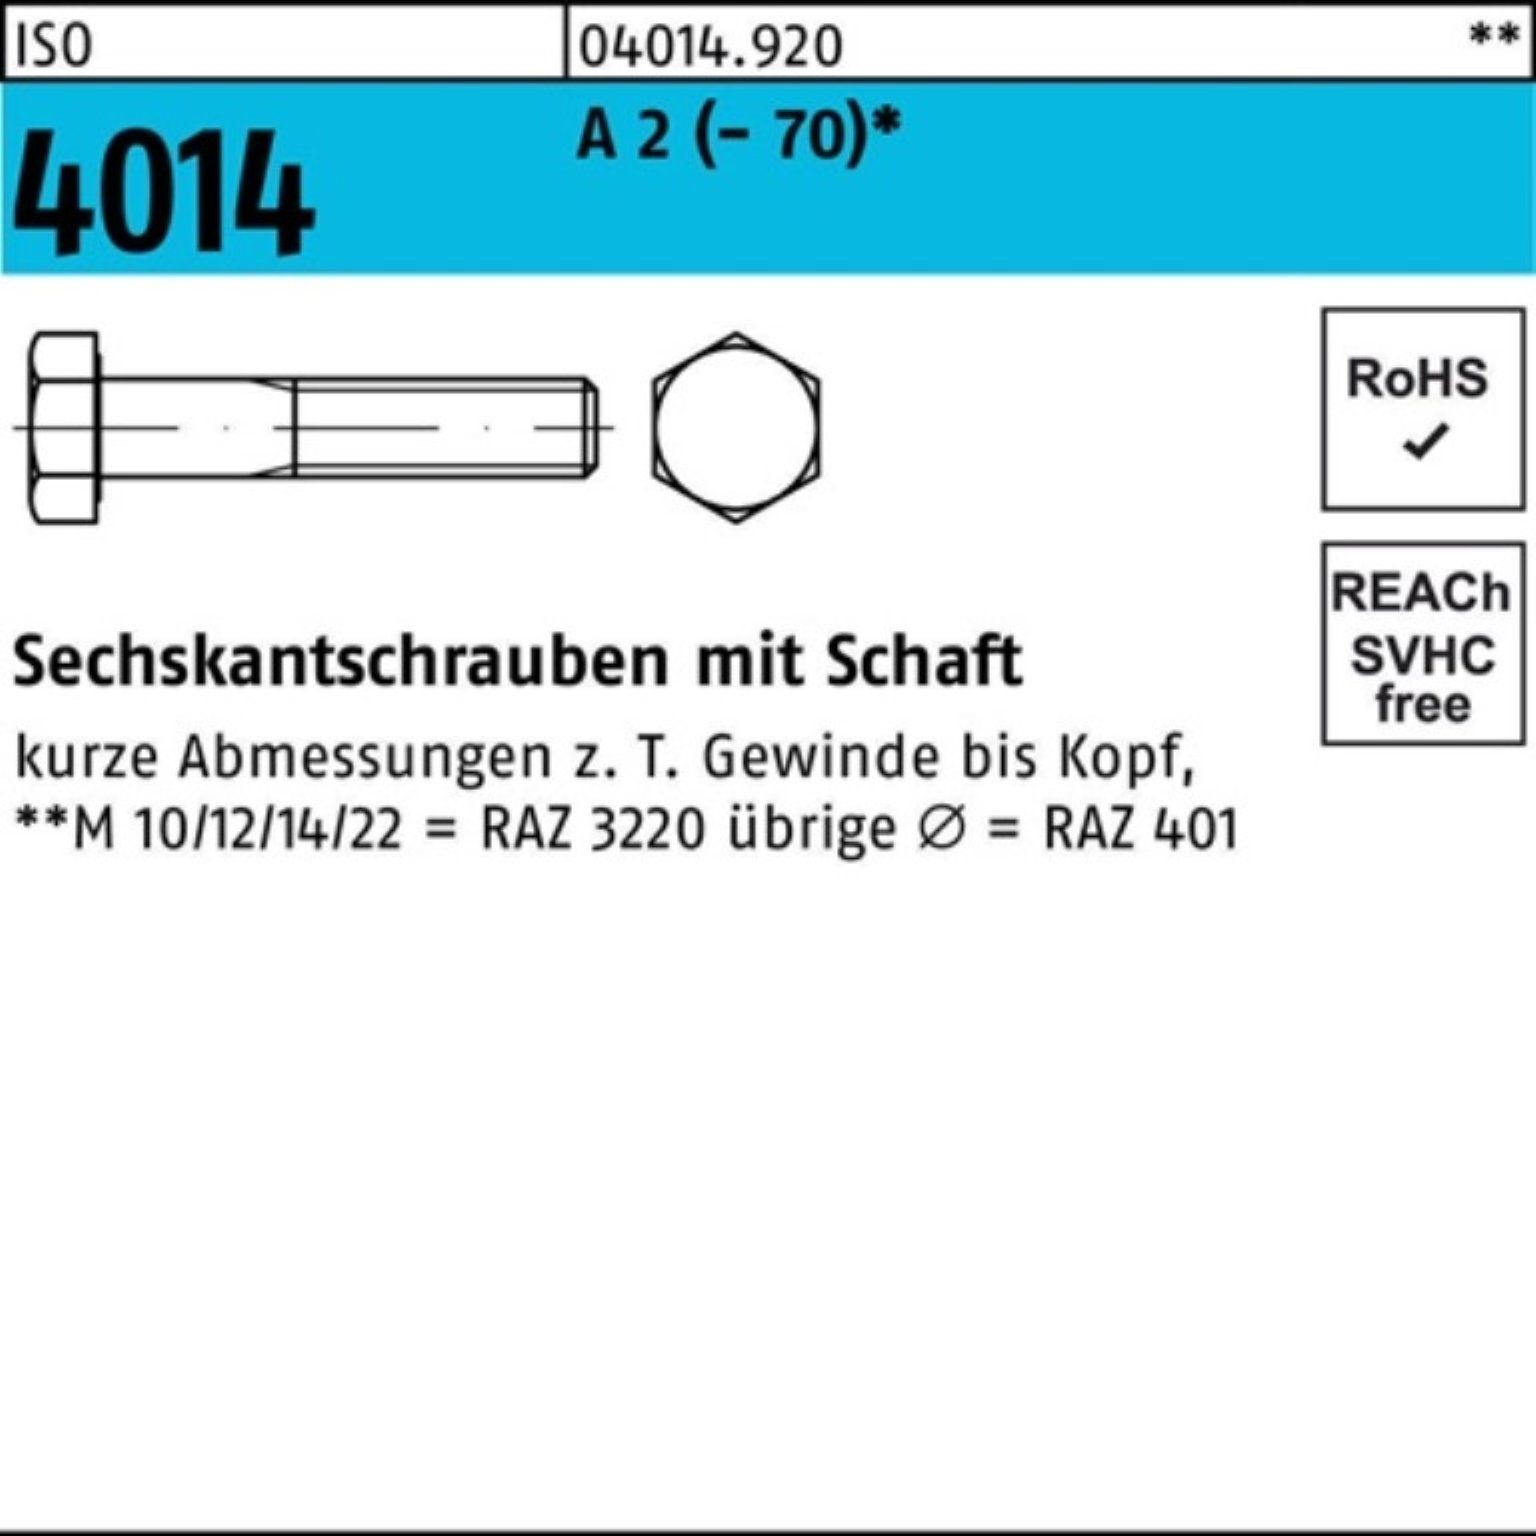 Bufab Sechskantschraube 100er Pack Sechskantschraube ISO 4014 Schaft M12x 60 A 2 (70) 50 St